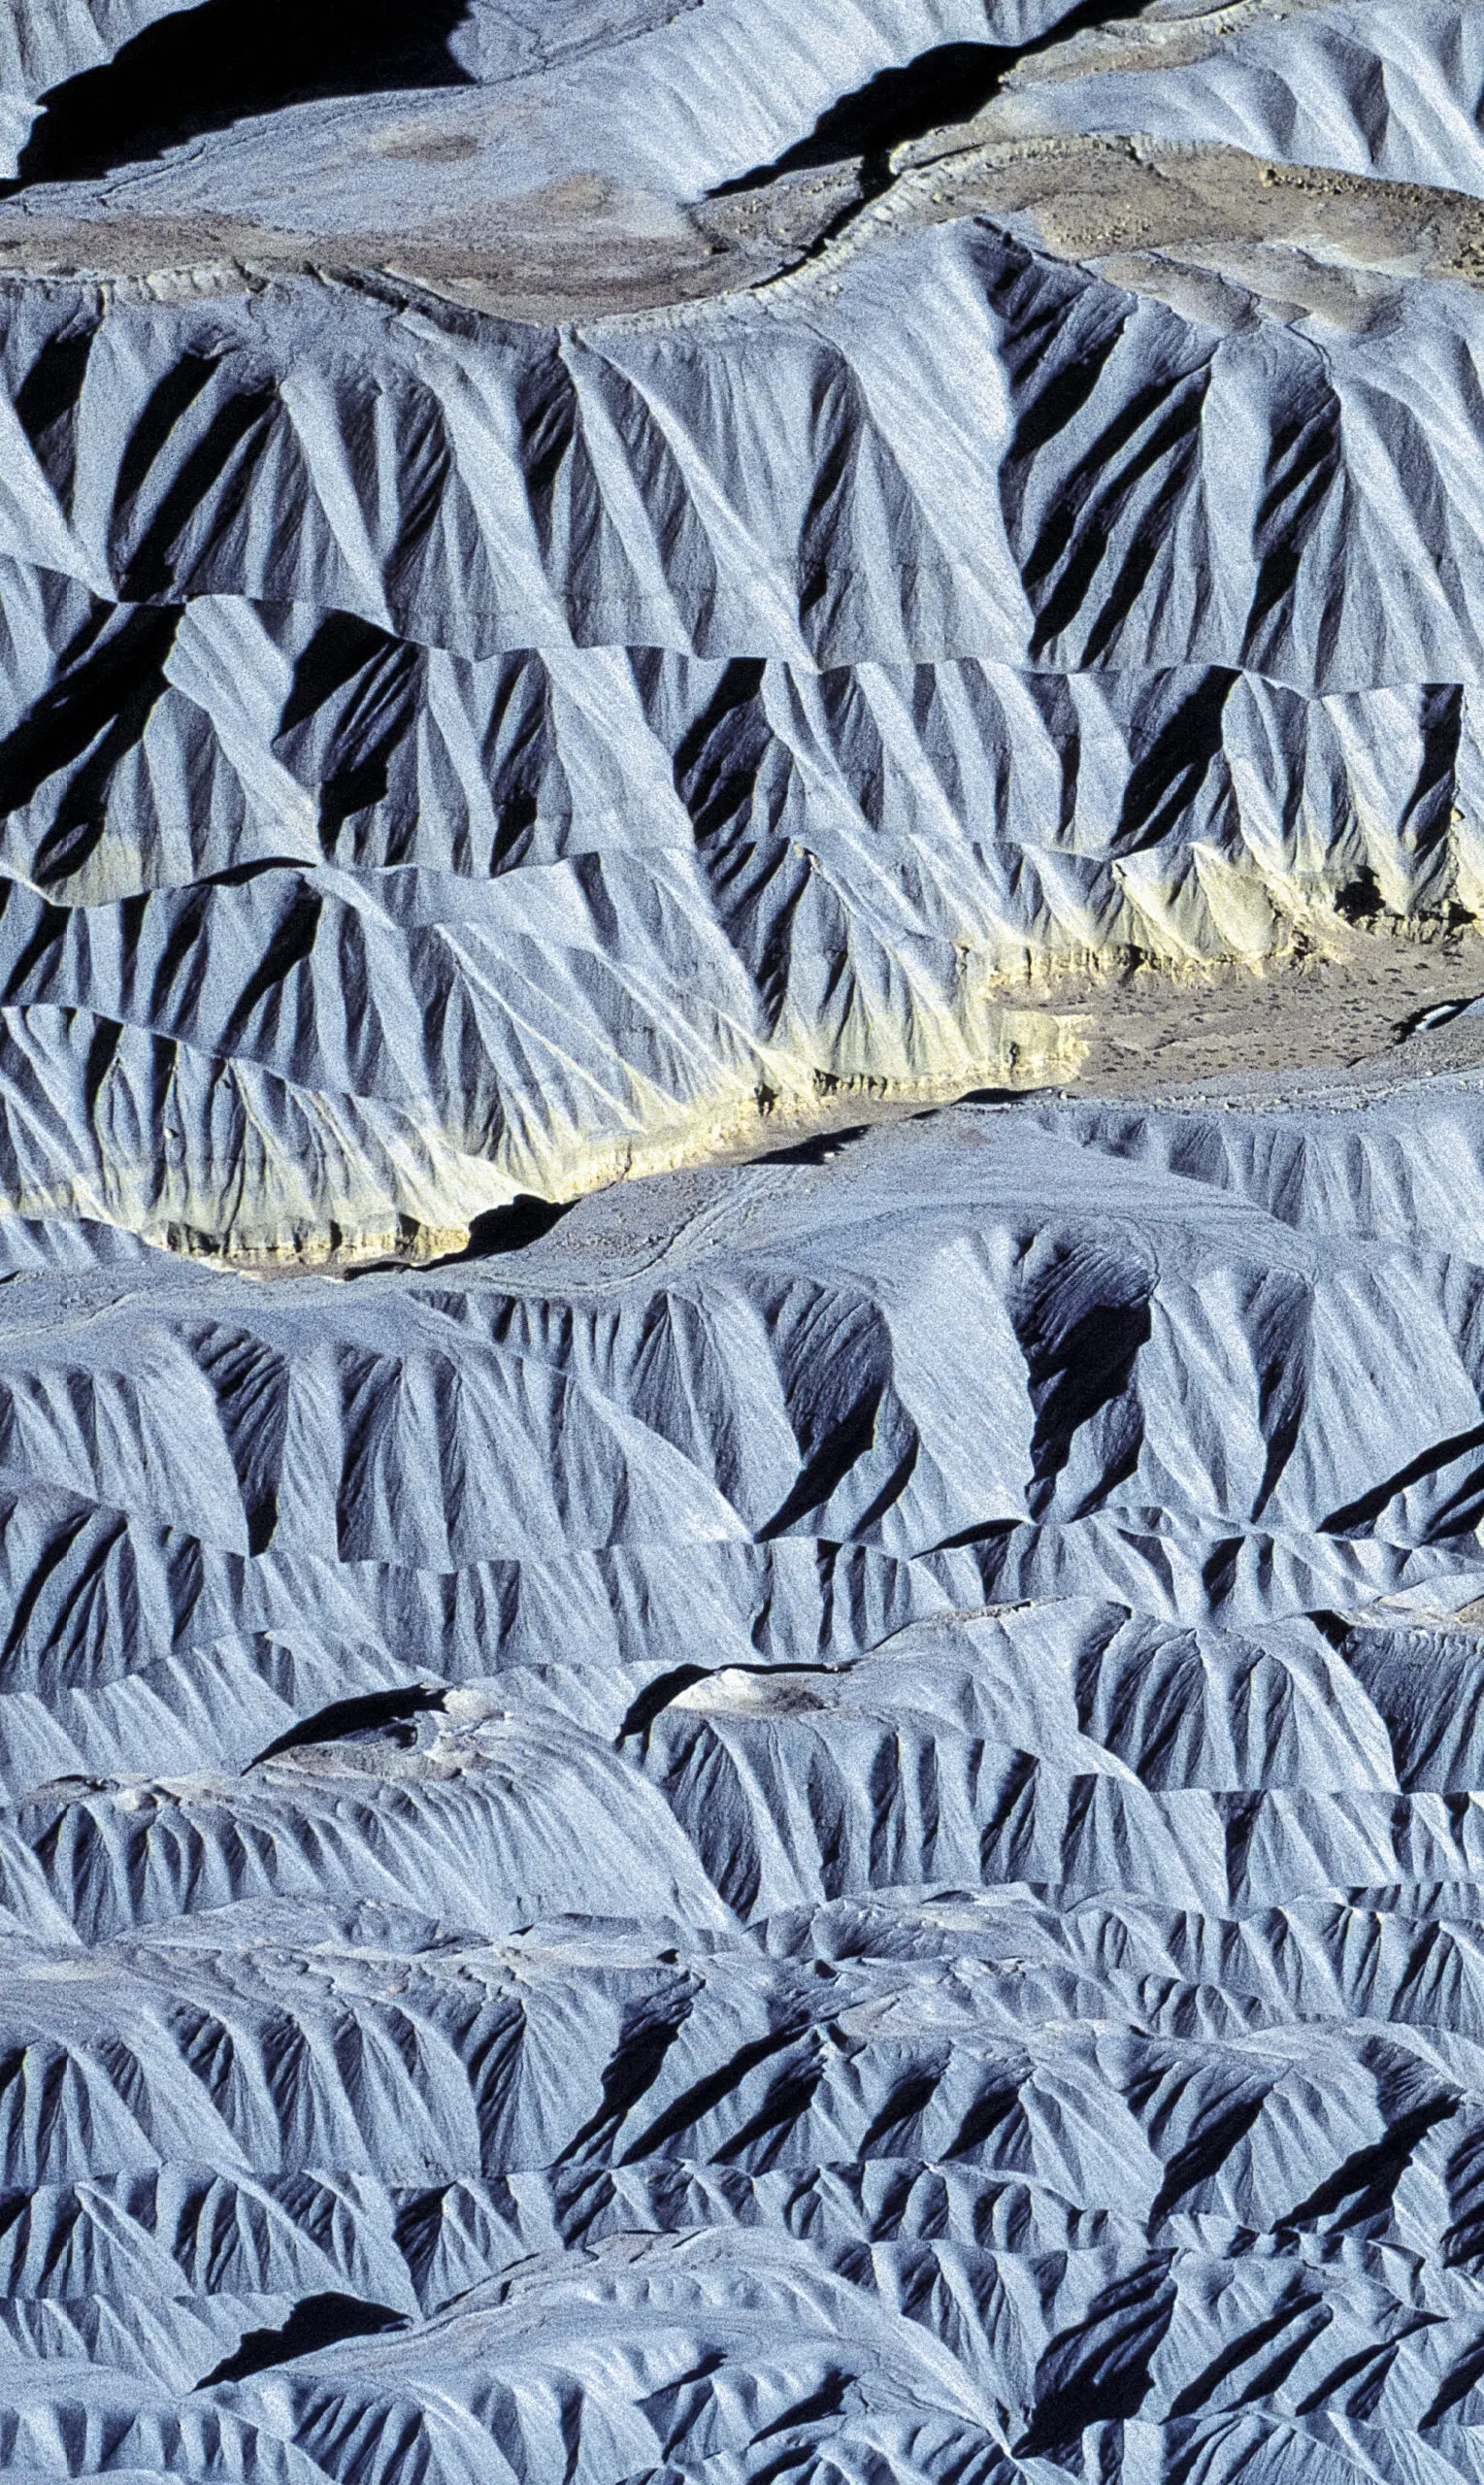 Wandbild (252) Marsland präsentiert: Details und Strukturen,Abstrakt,Landschaften,Schnee und Eis,Detailaufnahmen,Erde